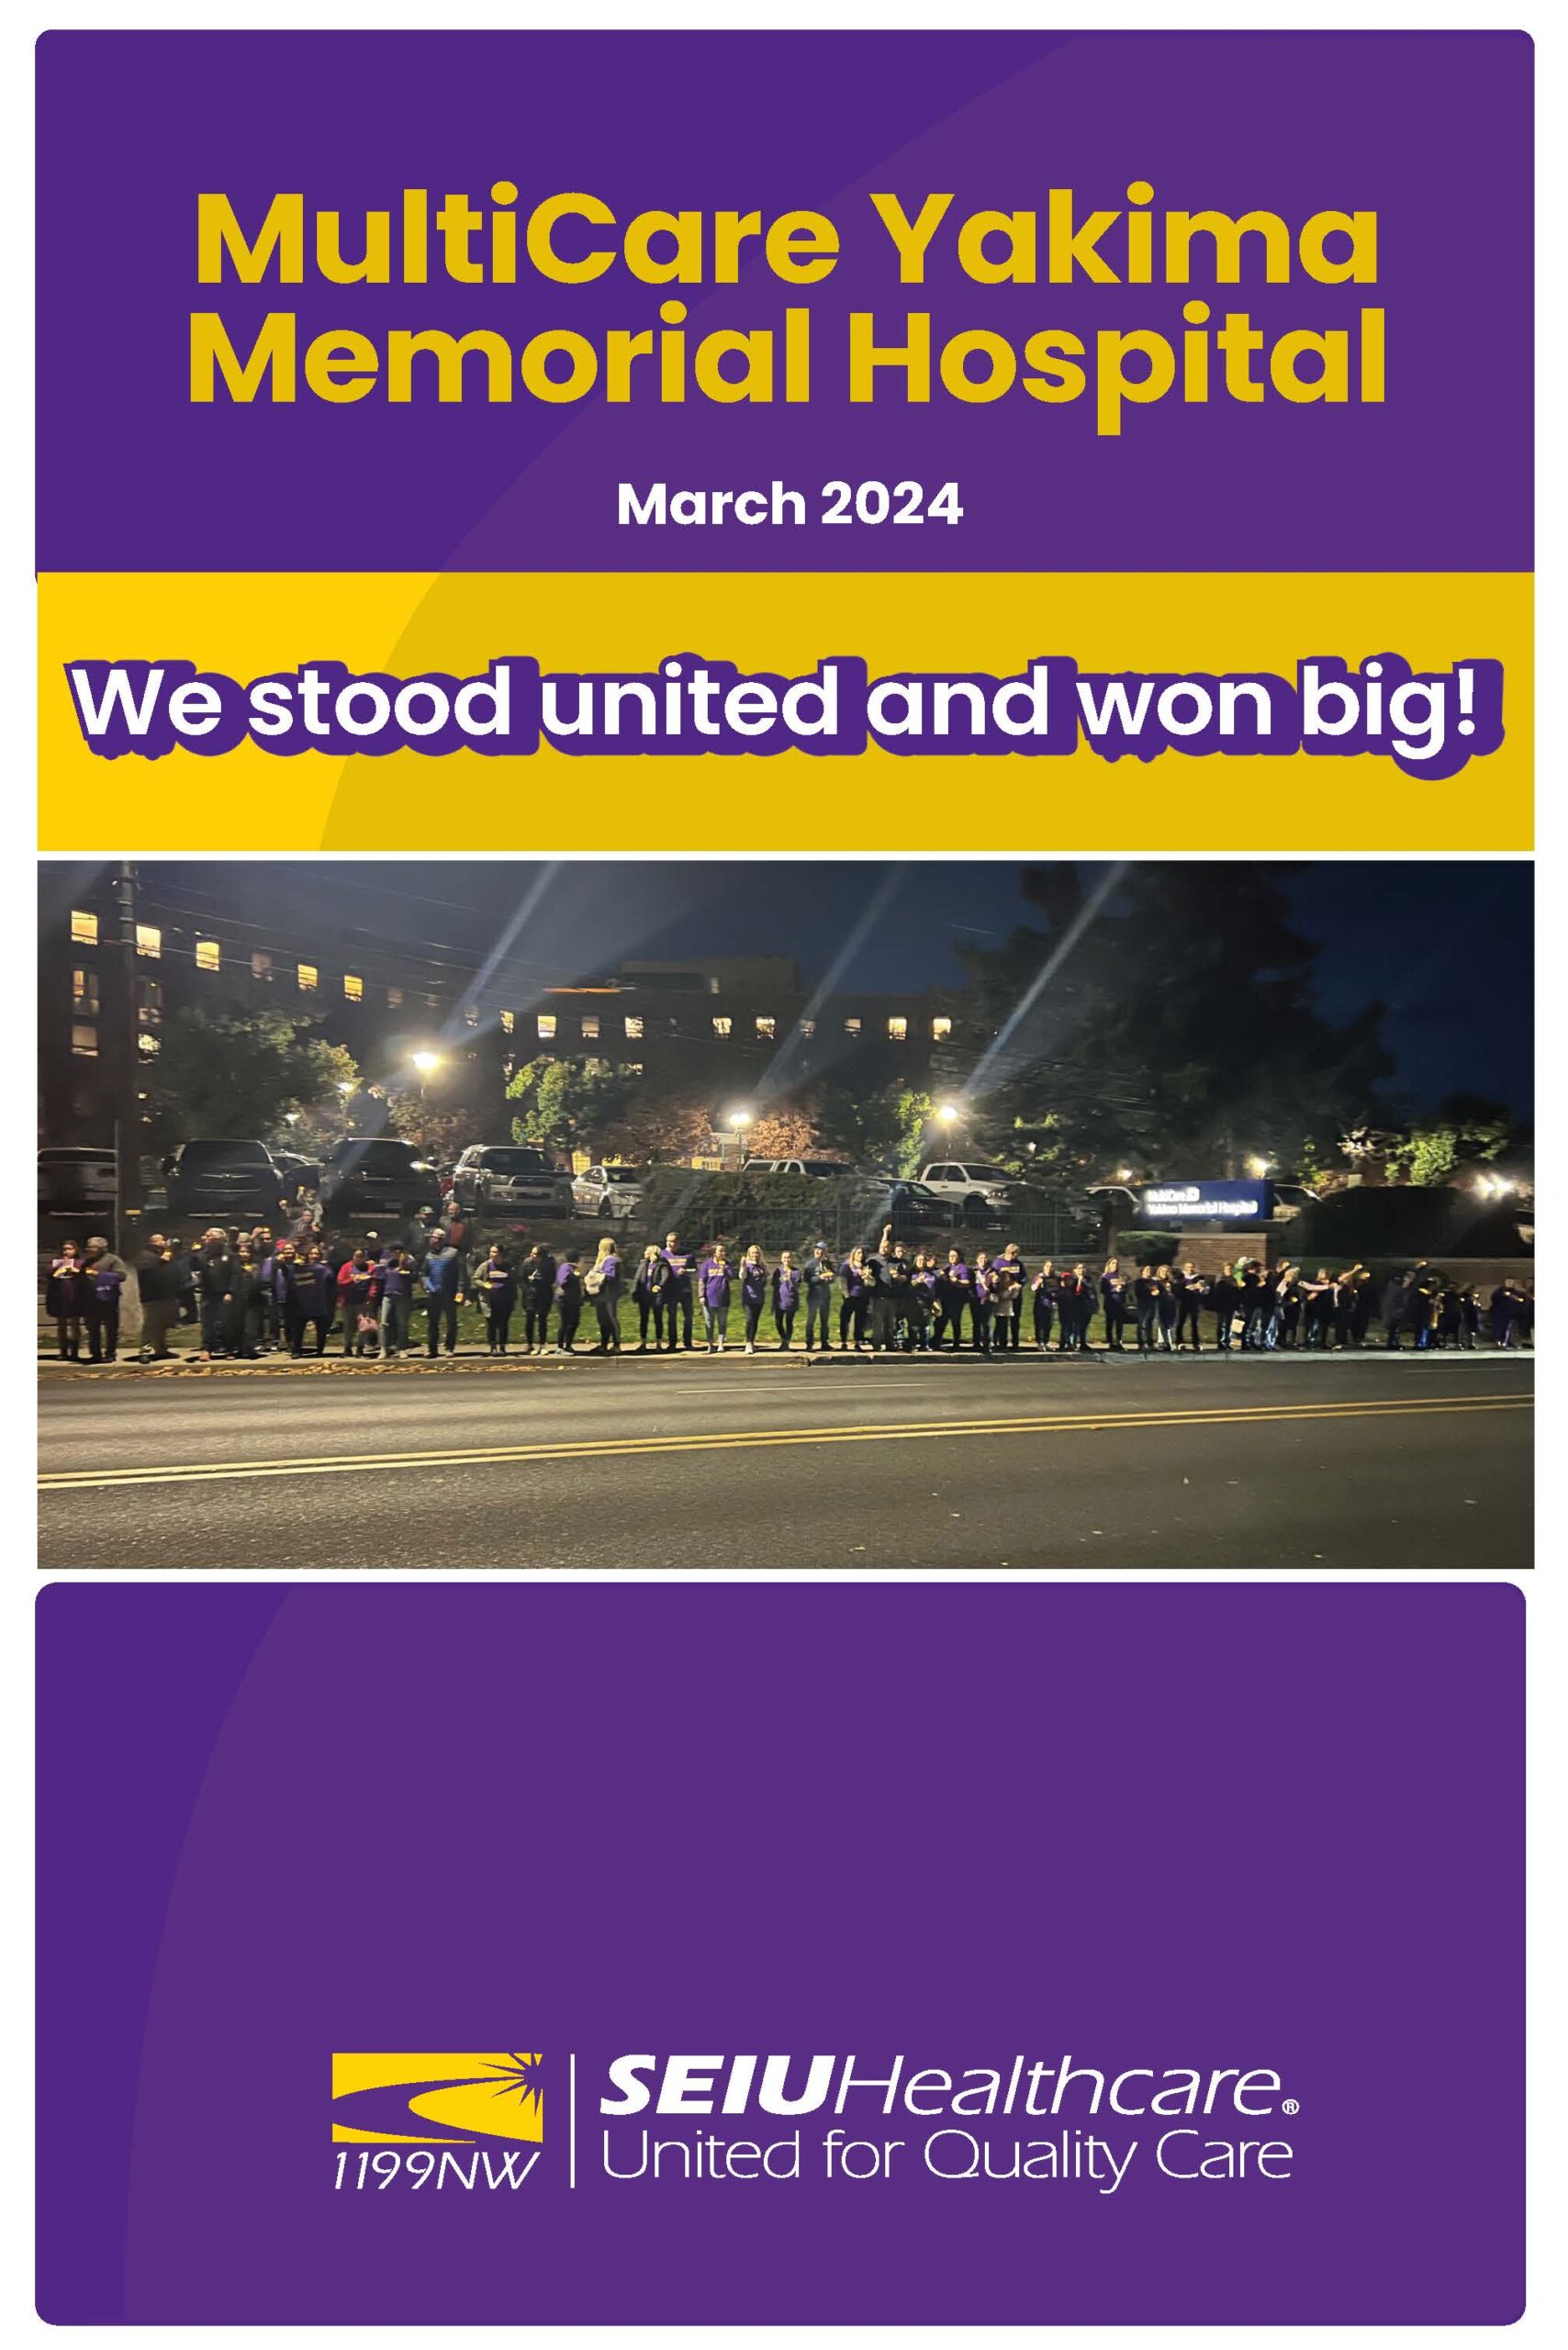 We stood united and won big!